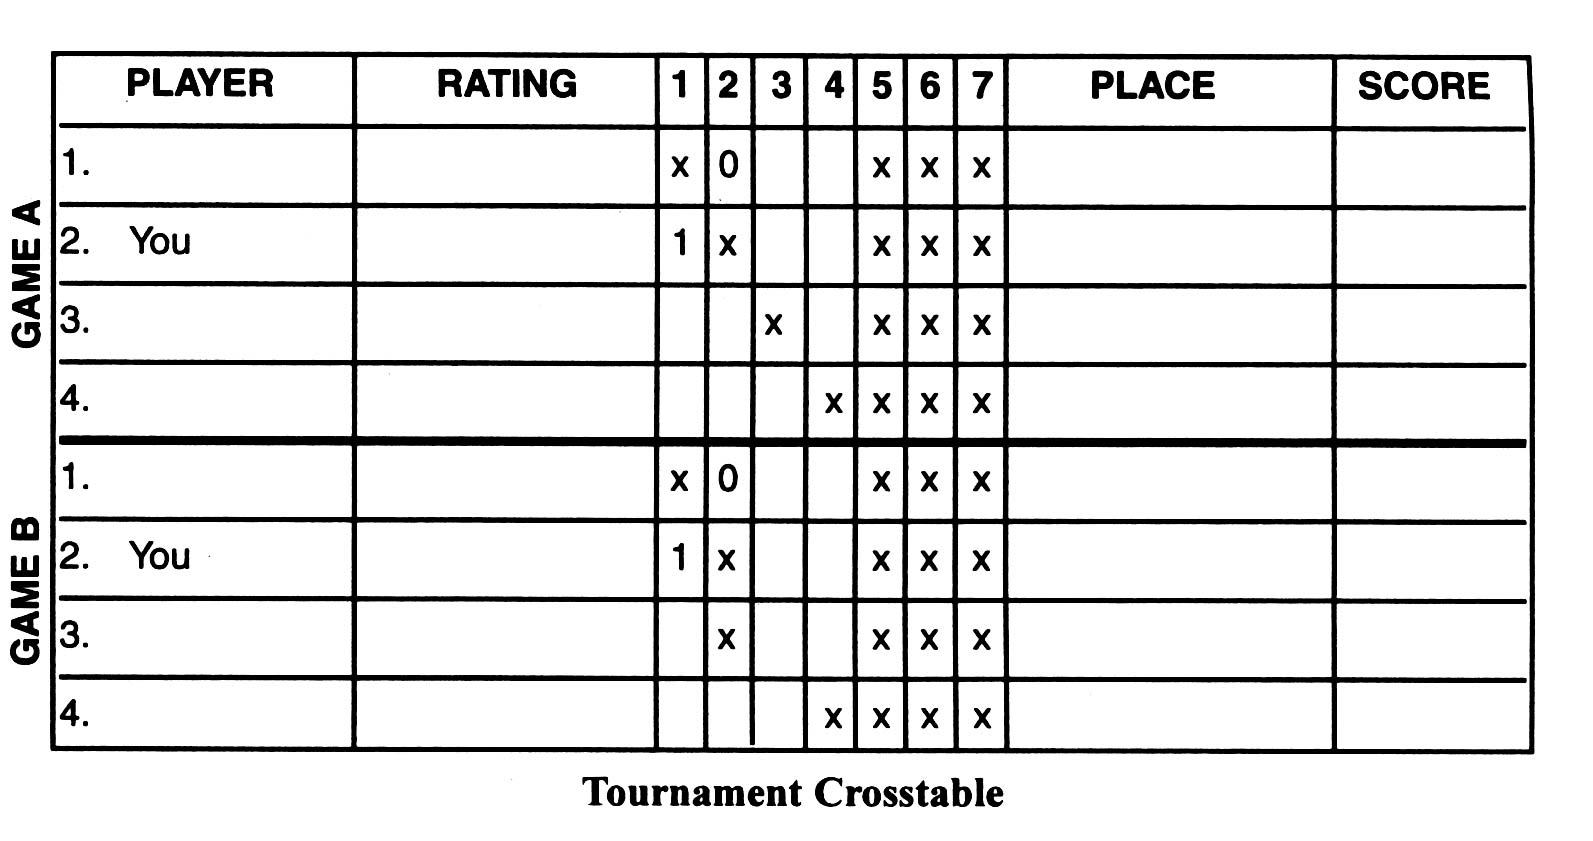 tournament crosstable